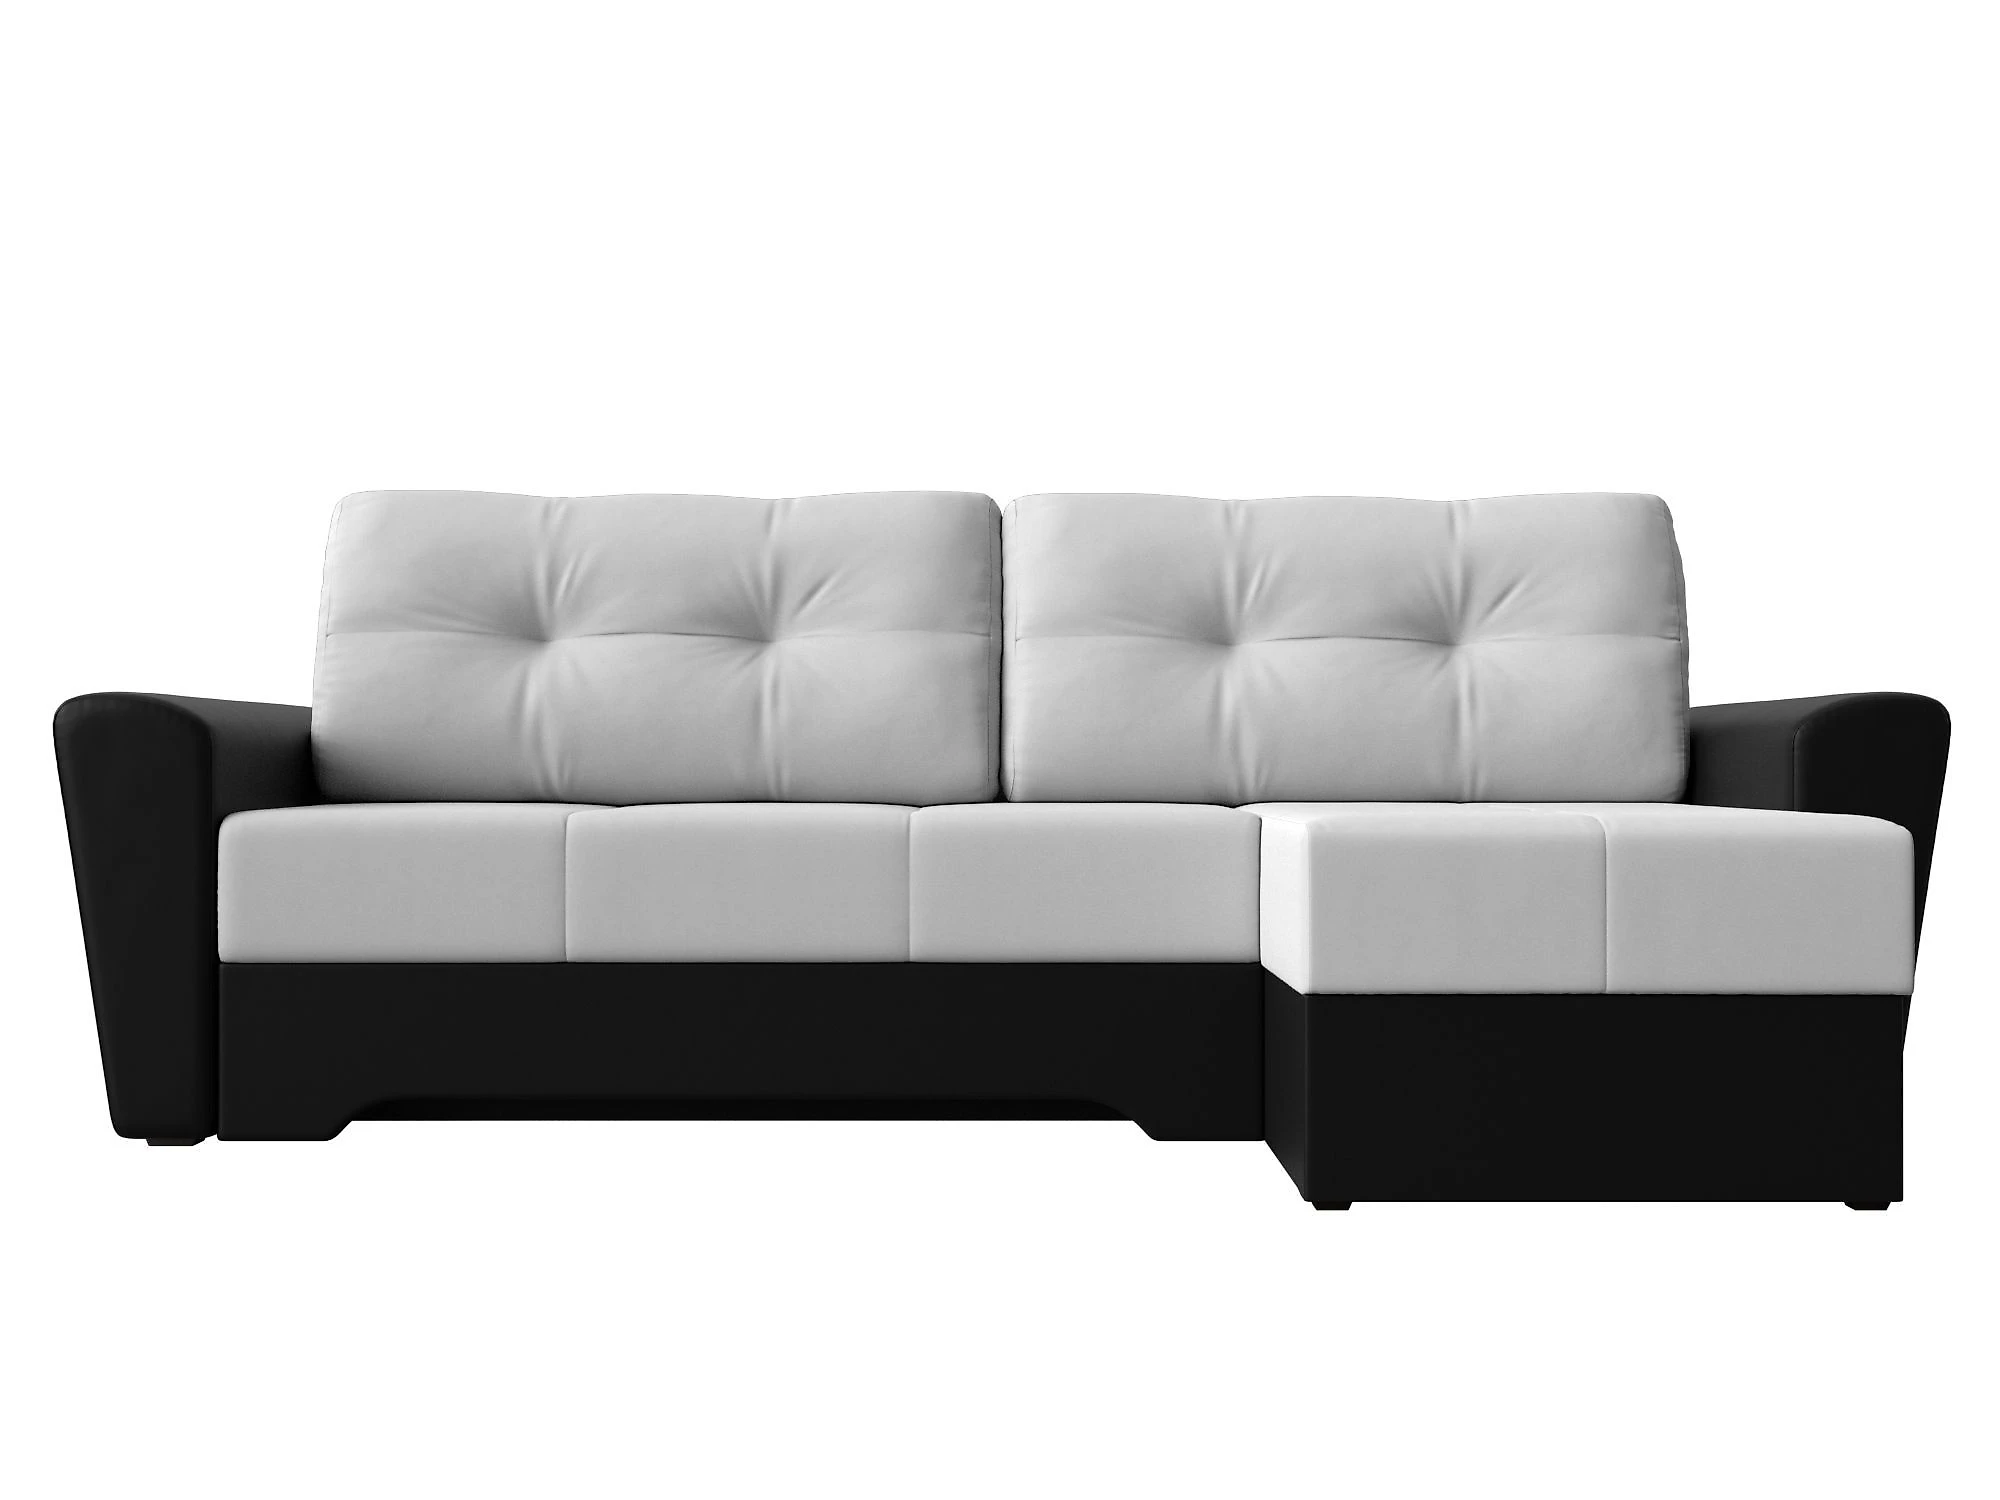  кожаный диван еврокнижка Амстердам Дизайн 46